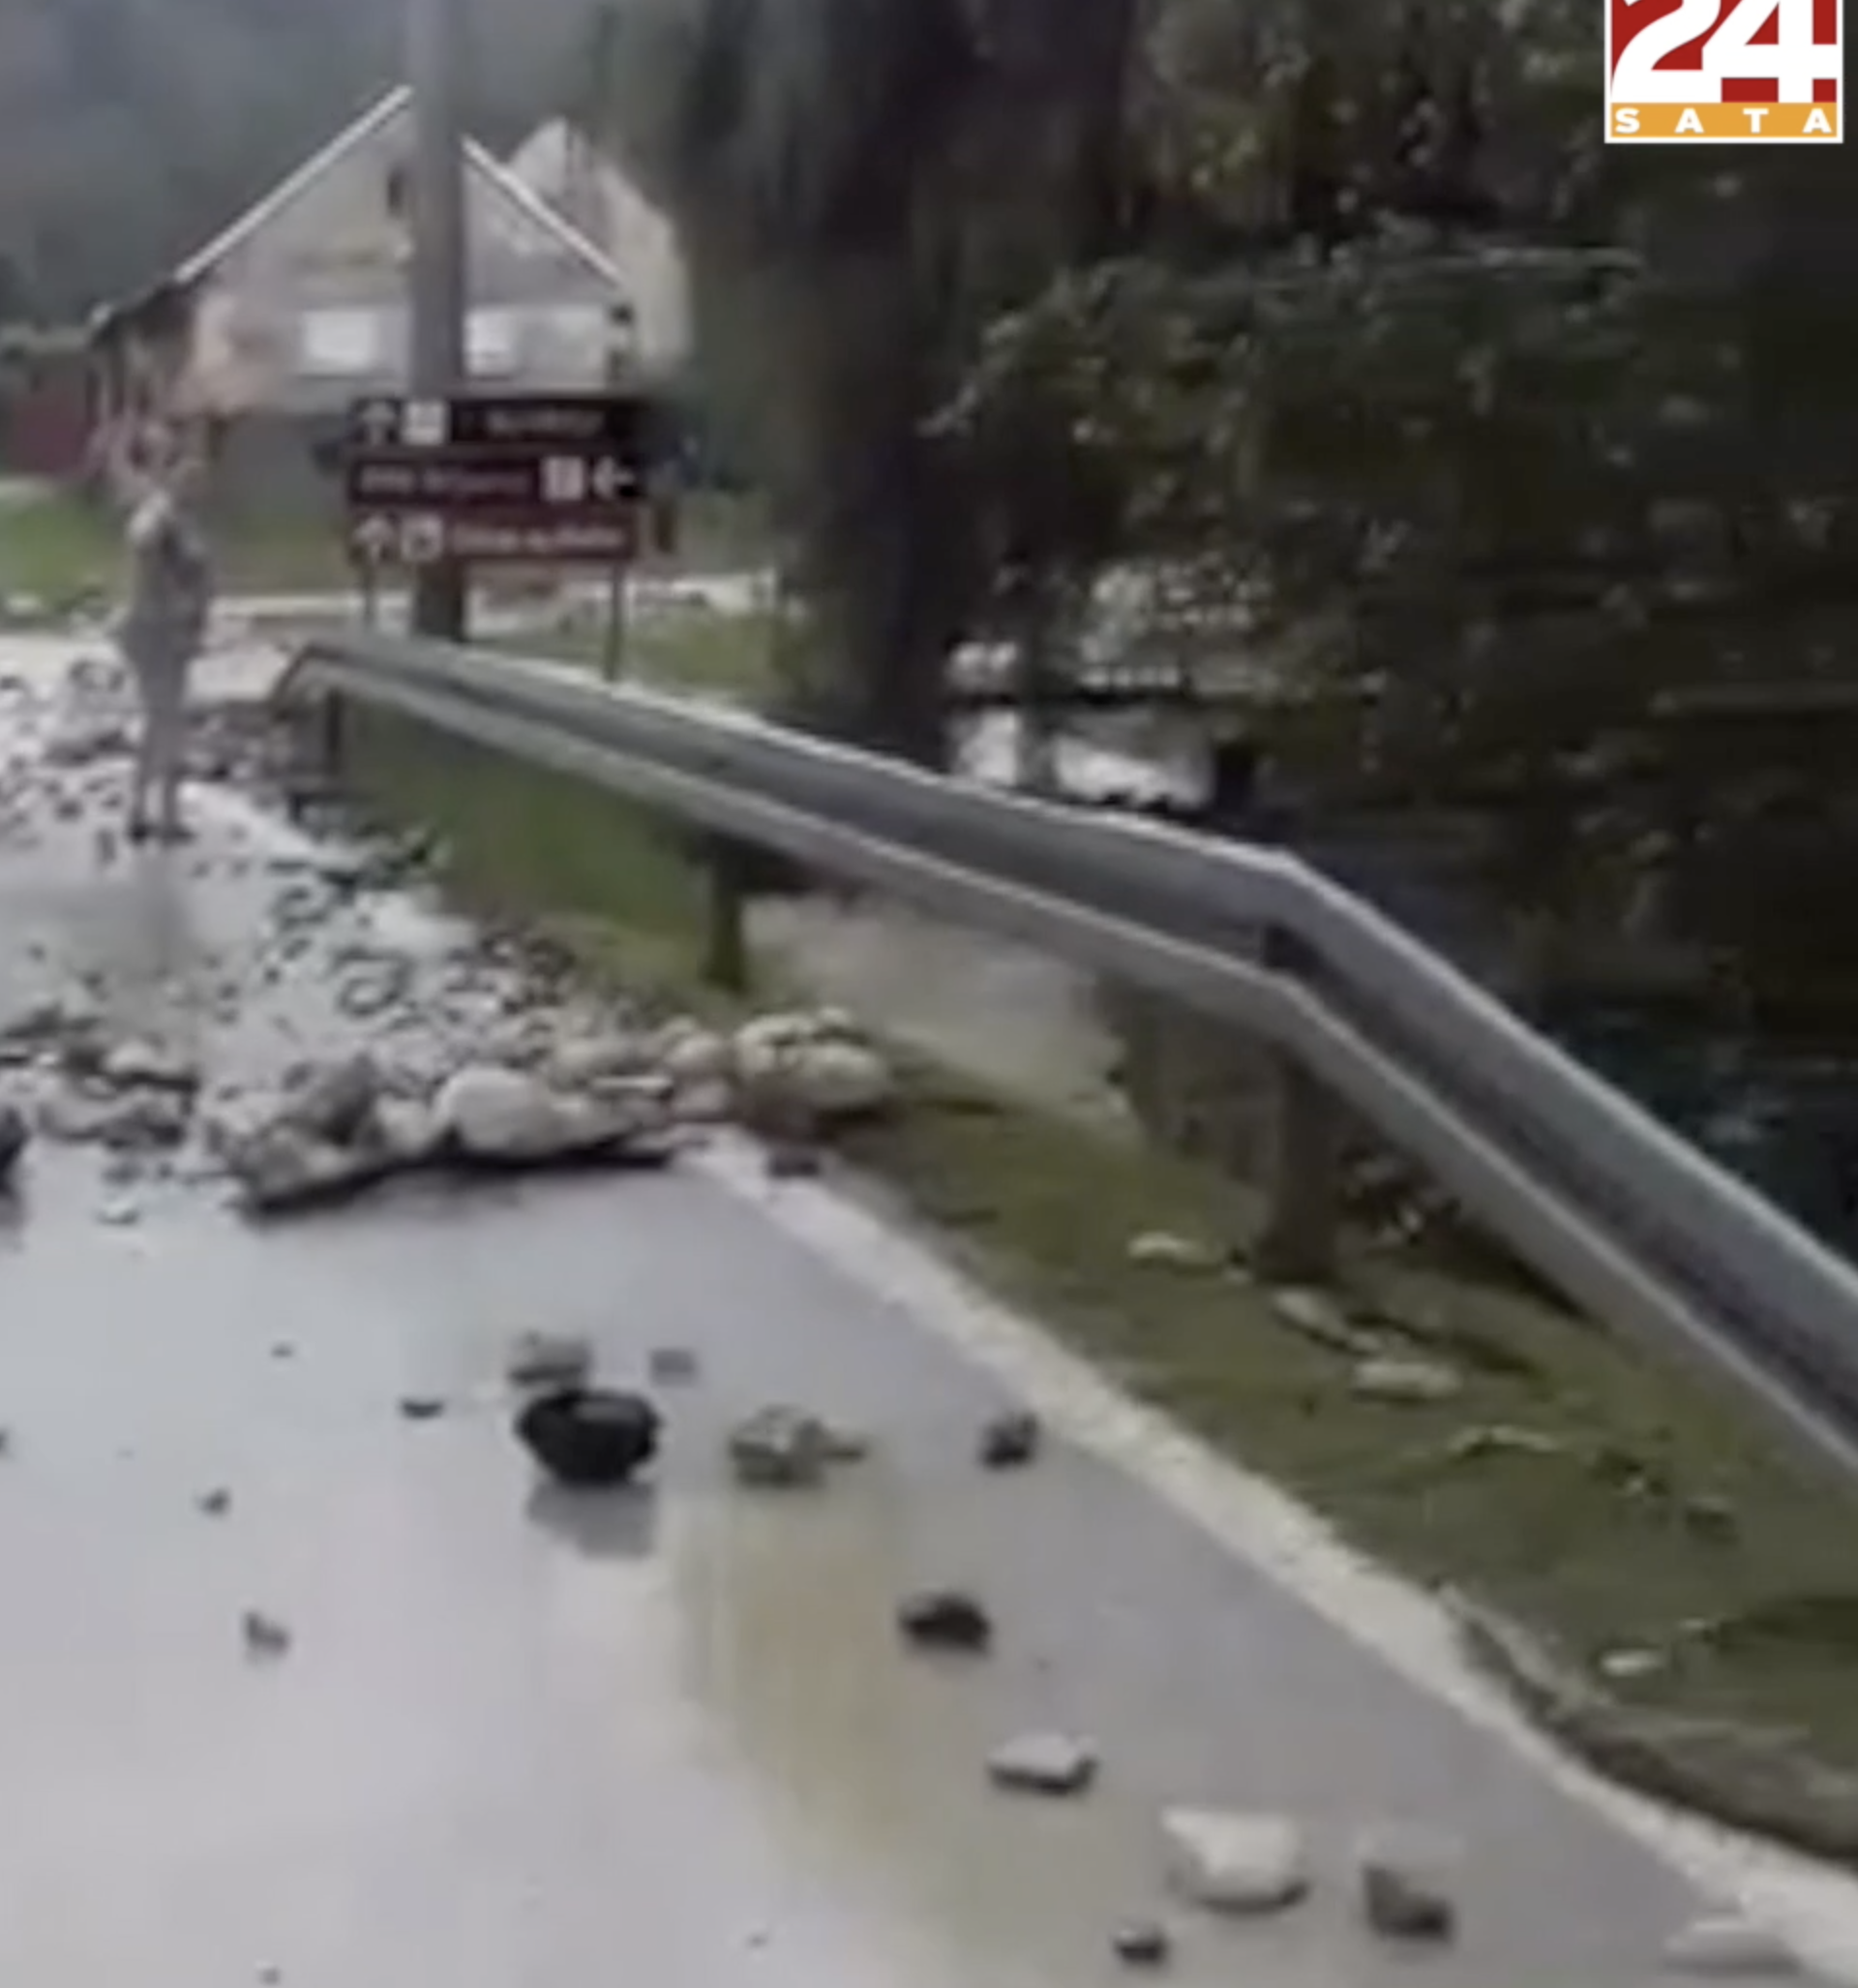 Kiša  tri puta u danu poplavila selo, ceste zatrpala kamenjem